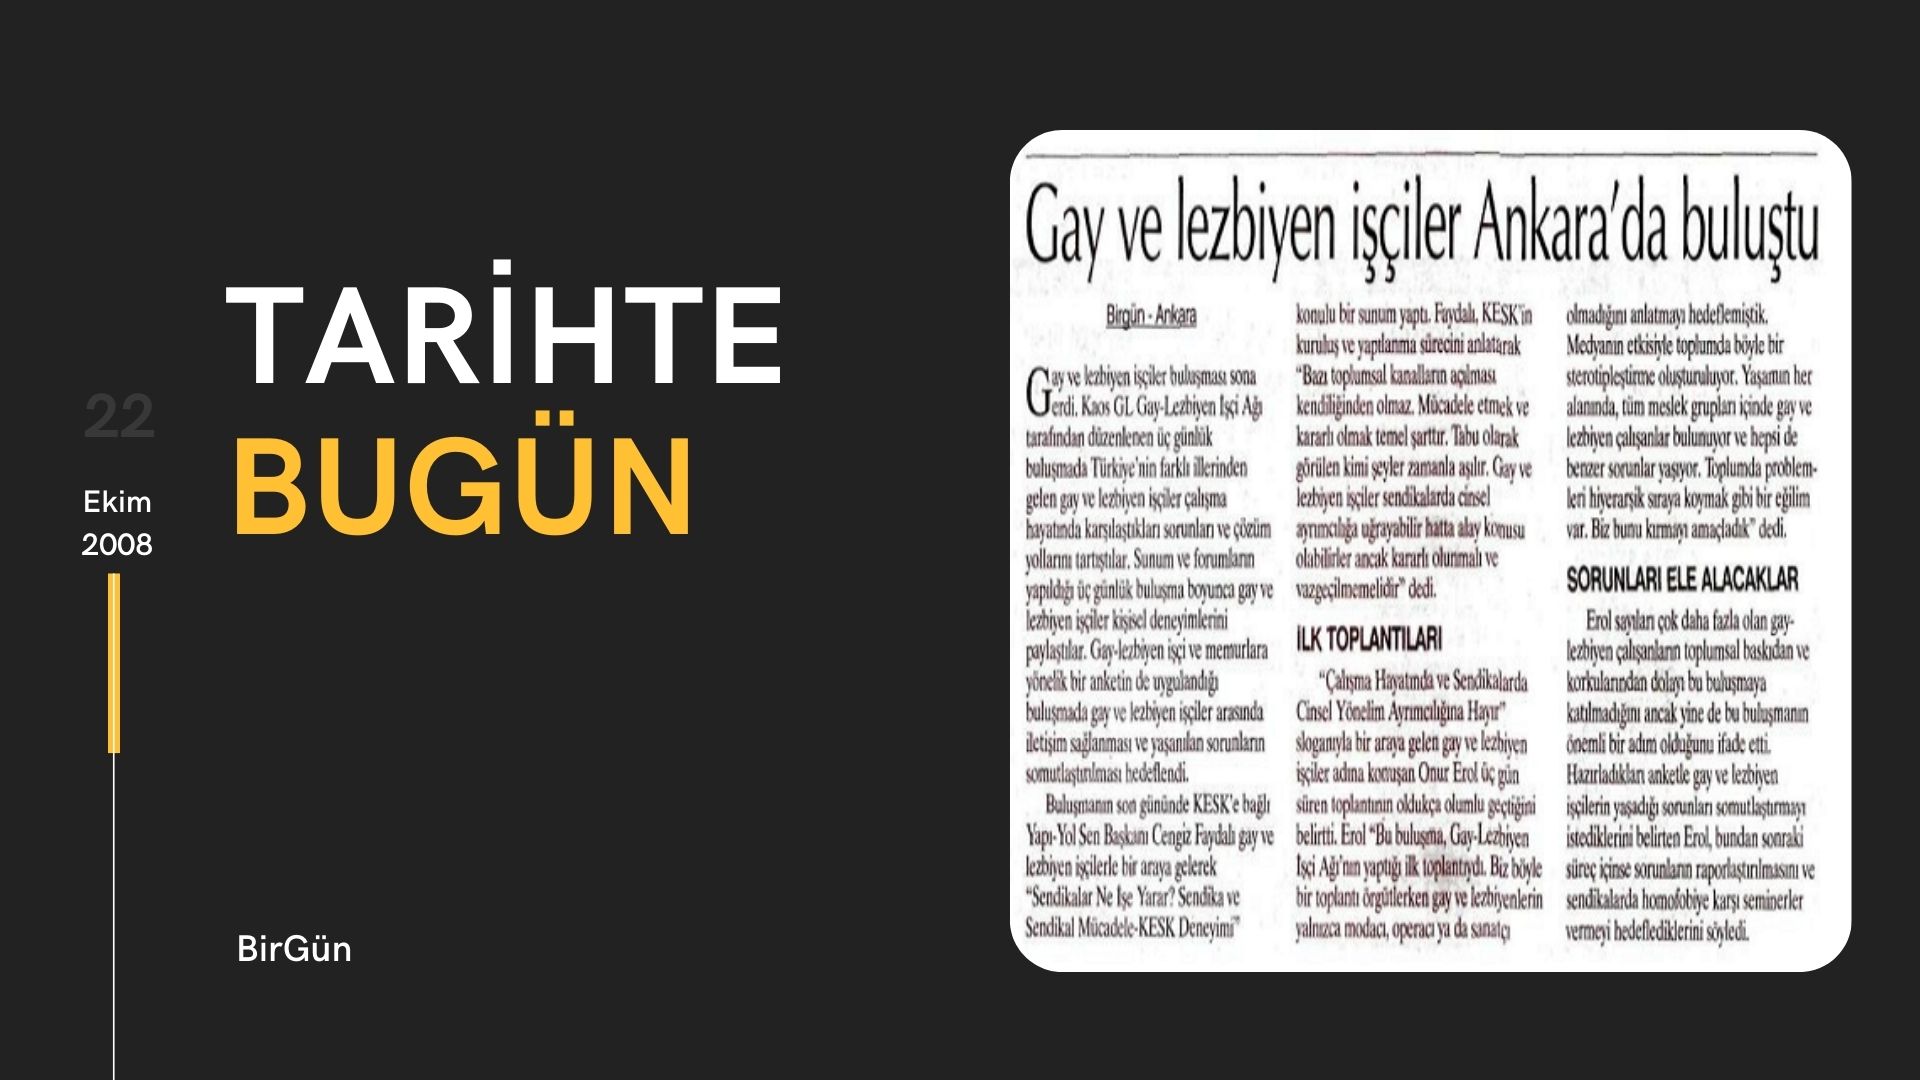 Tarihte bugün: “Gay ve lezbiyen işçiler Ankara'da buluştu” | Kaos GL - LGBTİ+ Haber Portalı